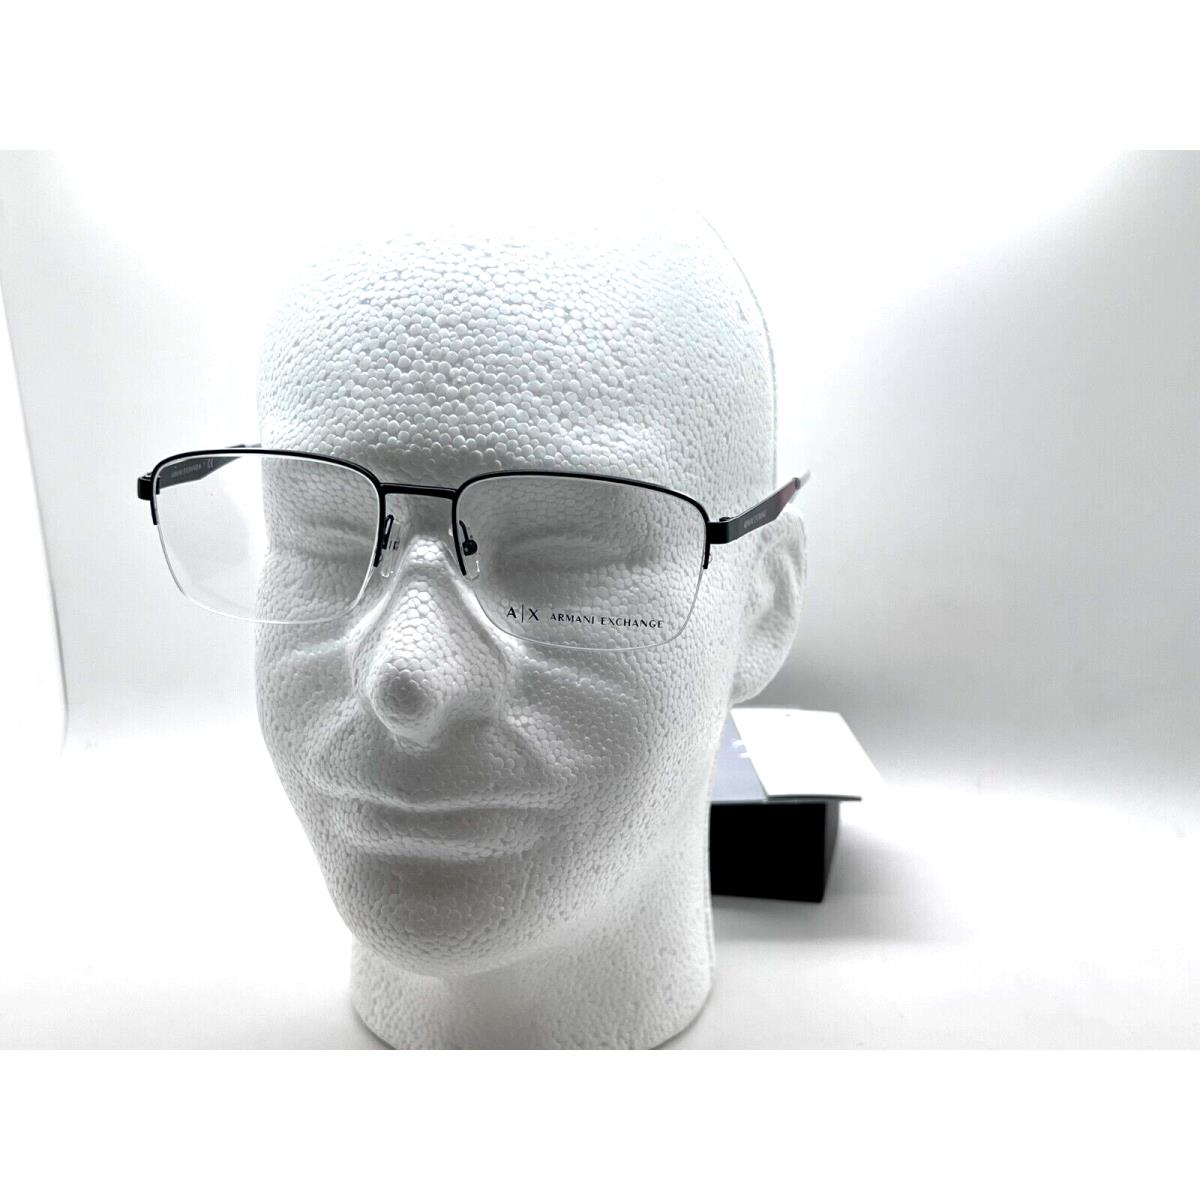 Armani Exchange eyeglasses  - MATTE BLACK Frame, Clear Demo Lens Lens 2